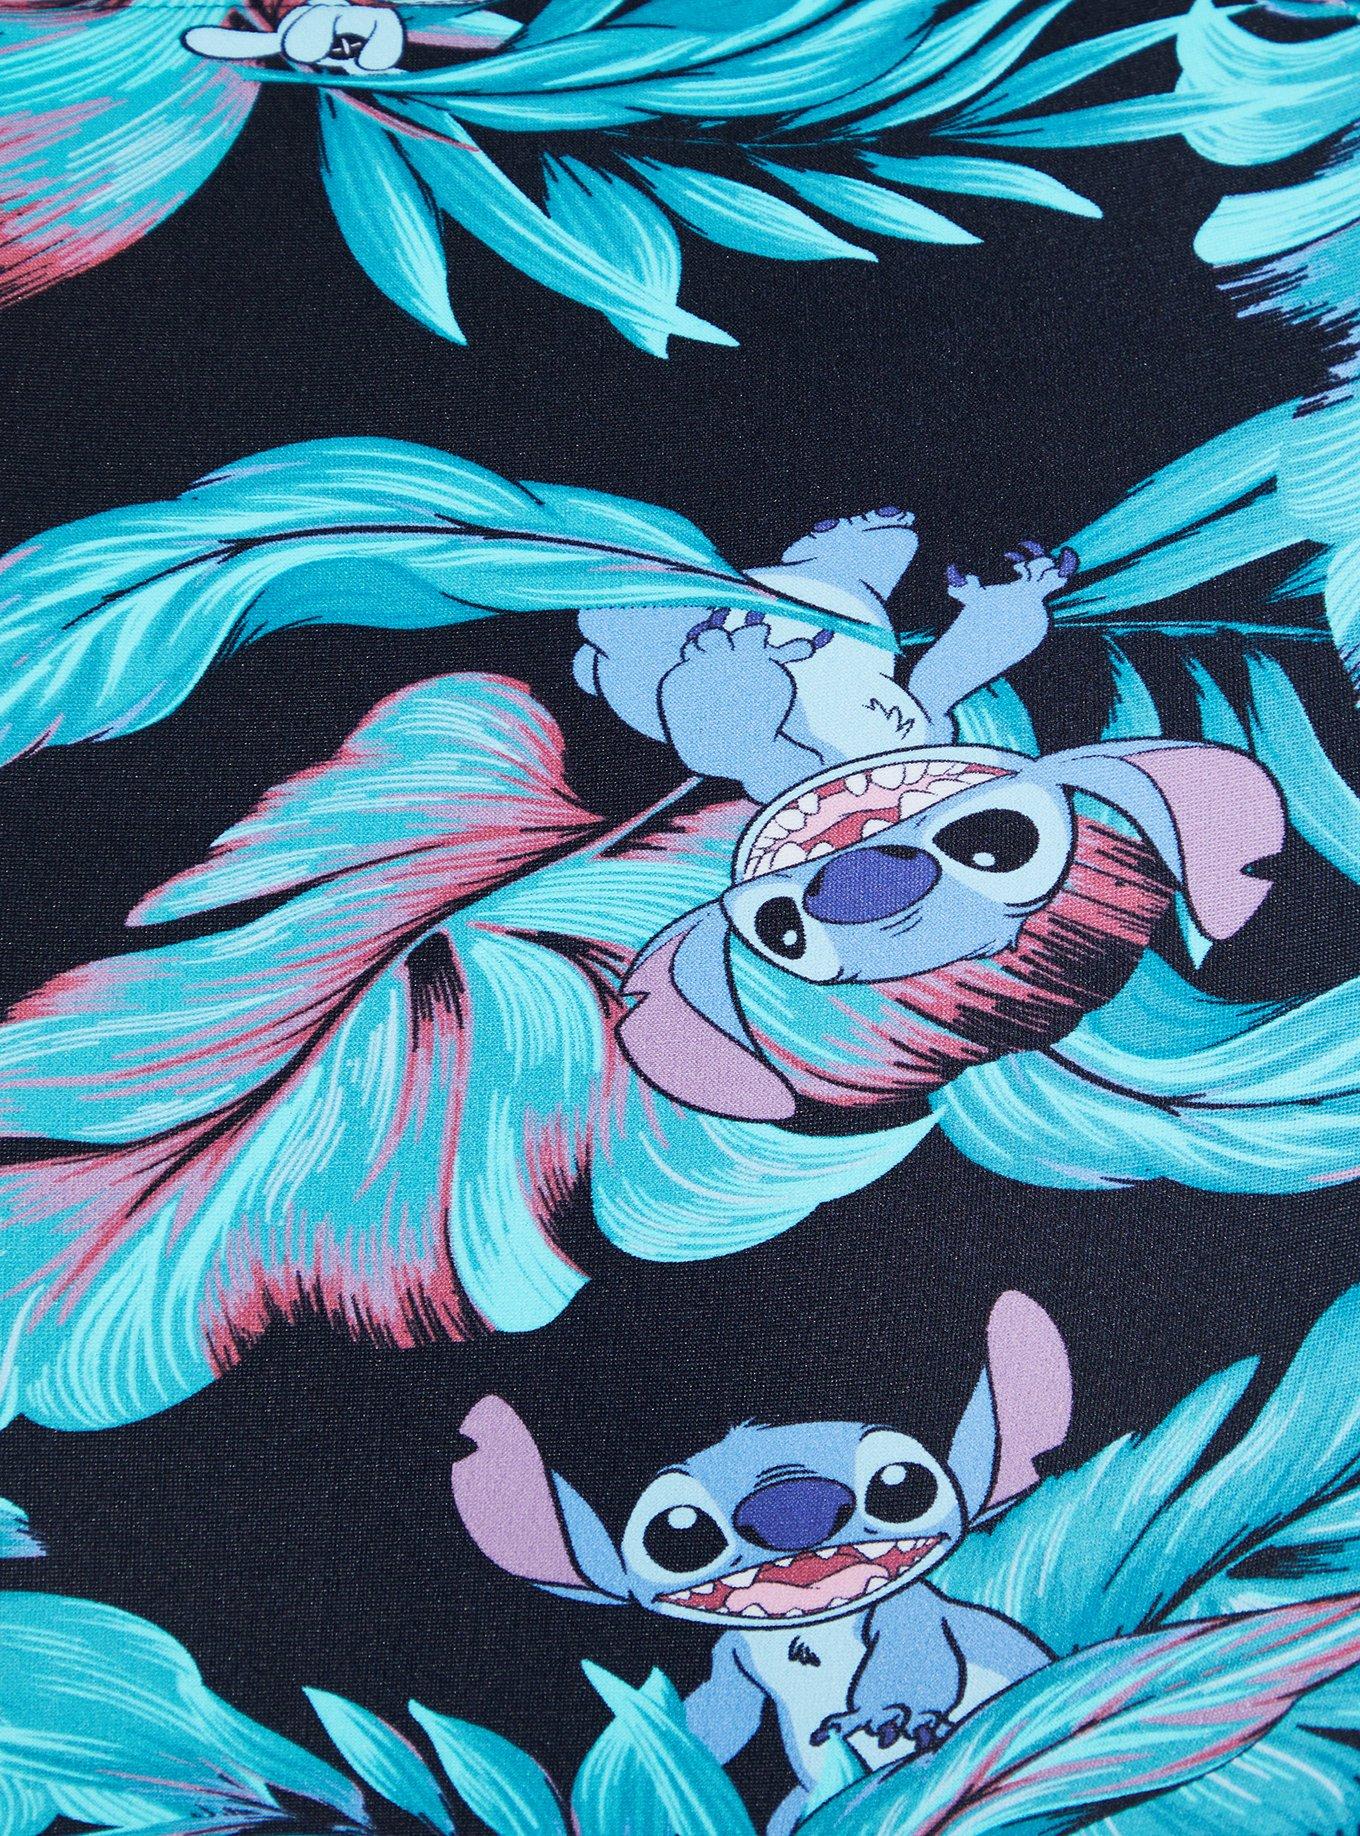 Plus Size - Onesie Pajamas - Disney Lilo & Stitch - Torrid